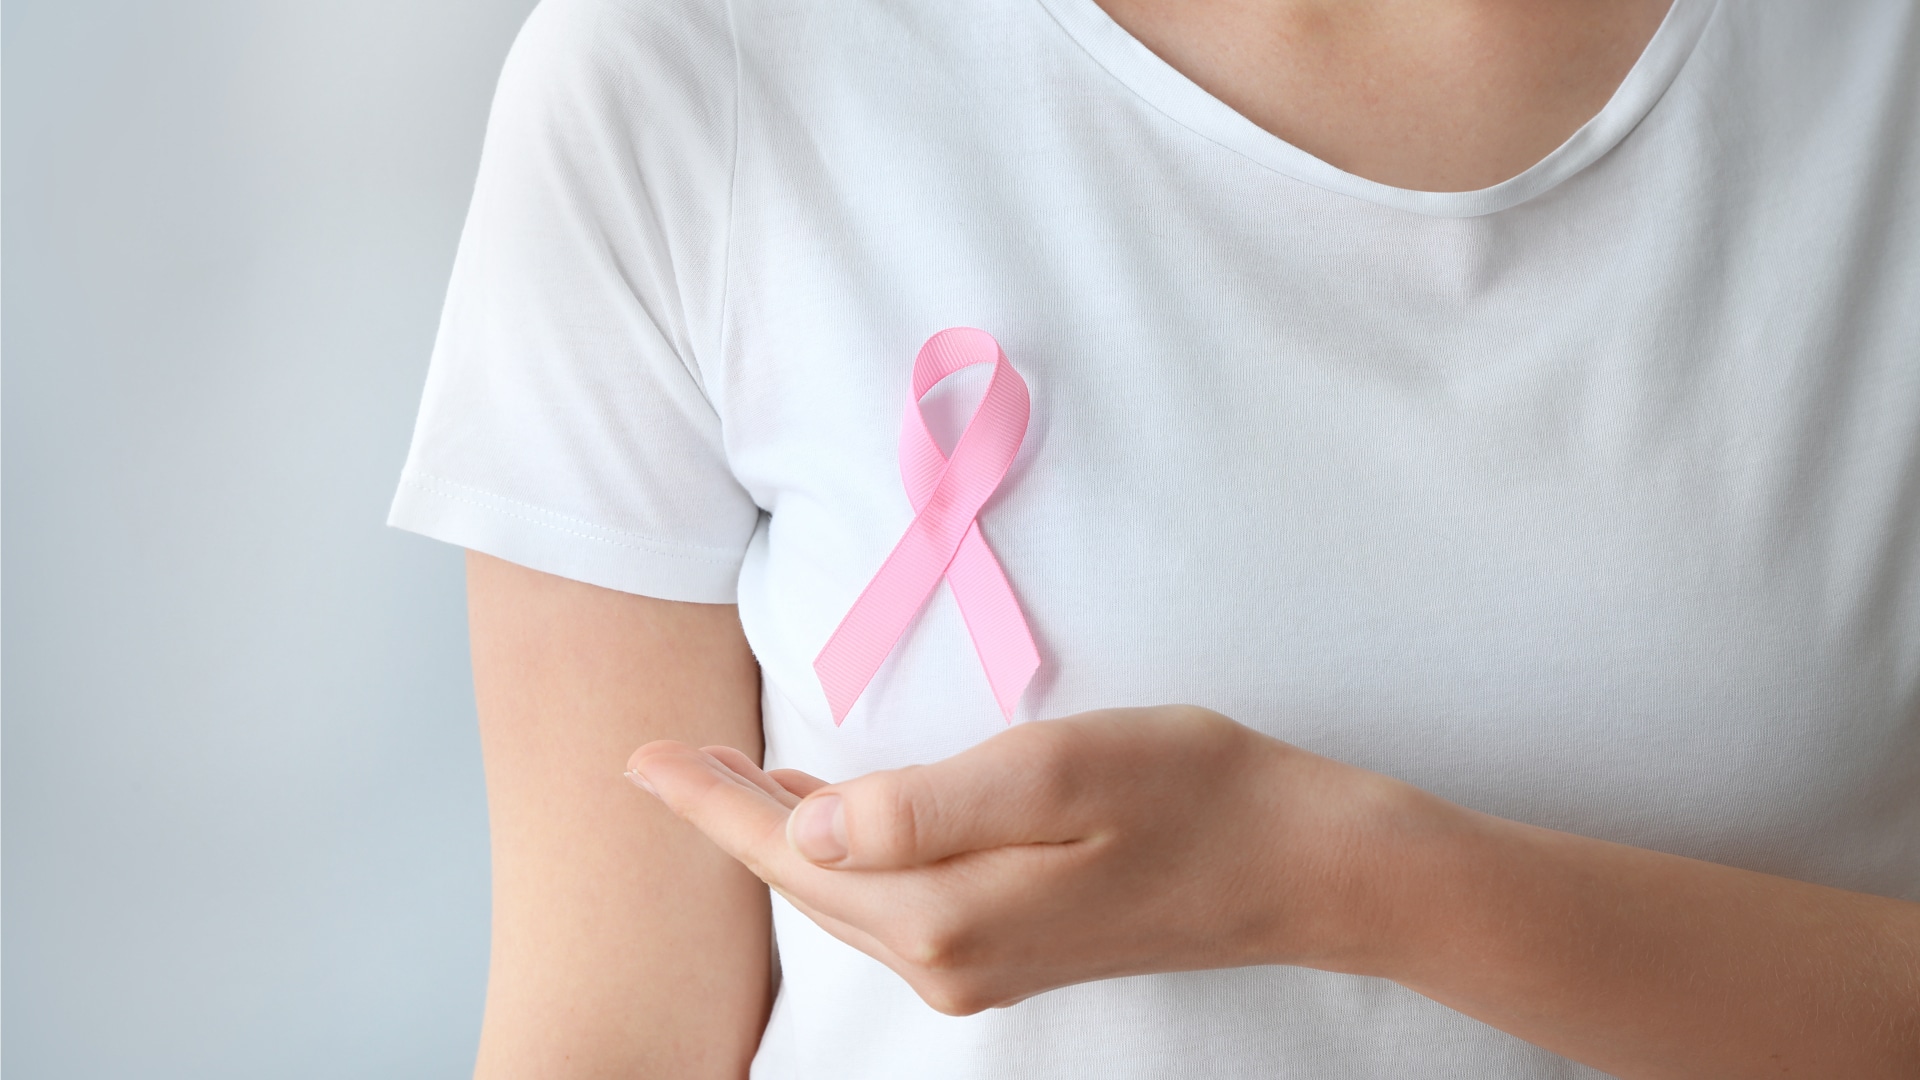 Outubro Rosa, campanha contra o câncer de mama!